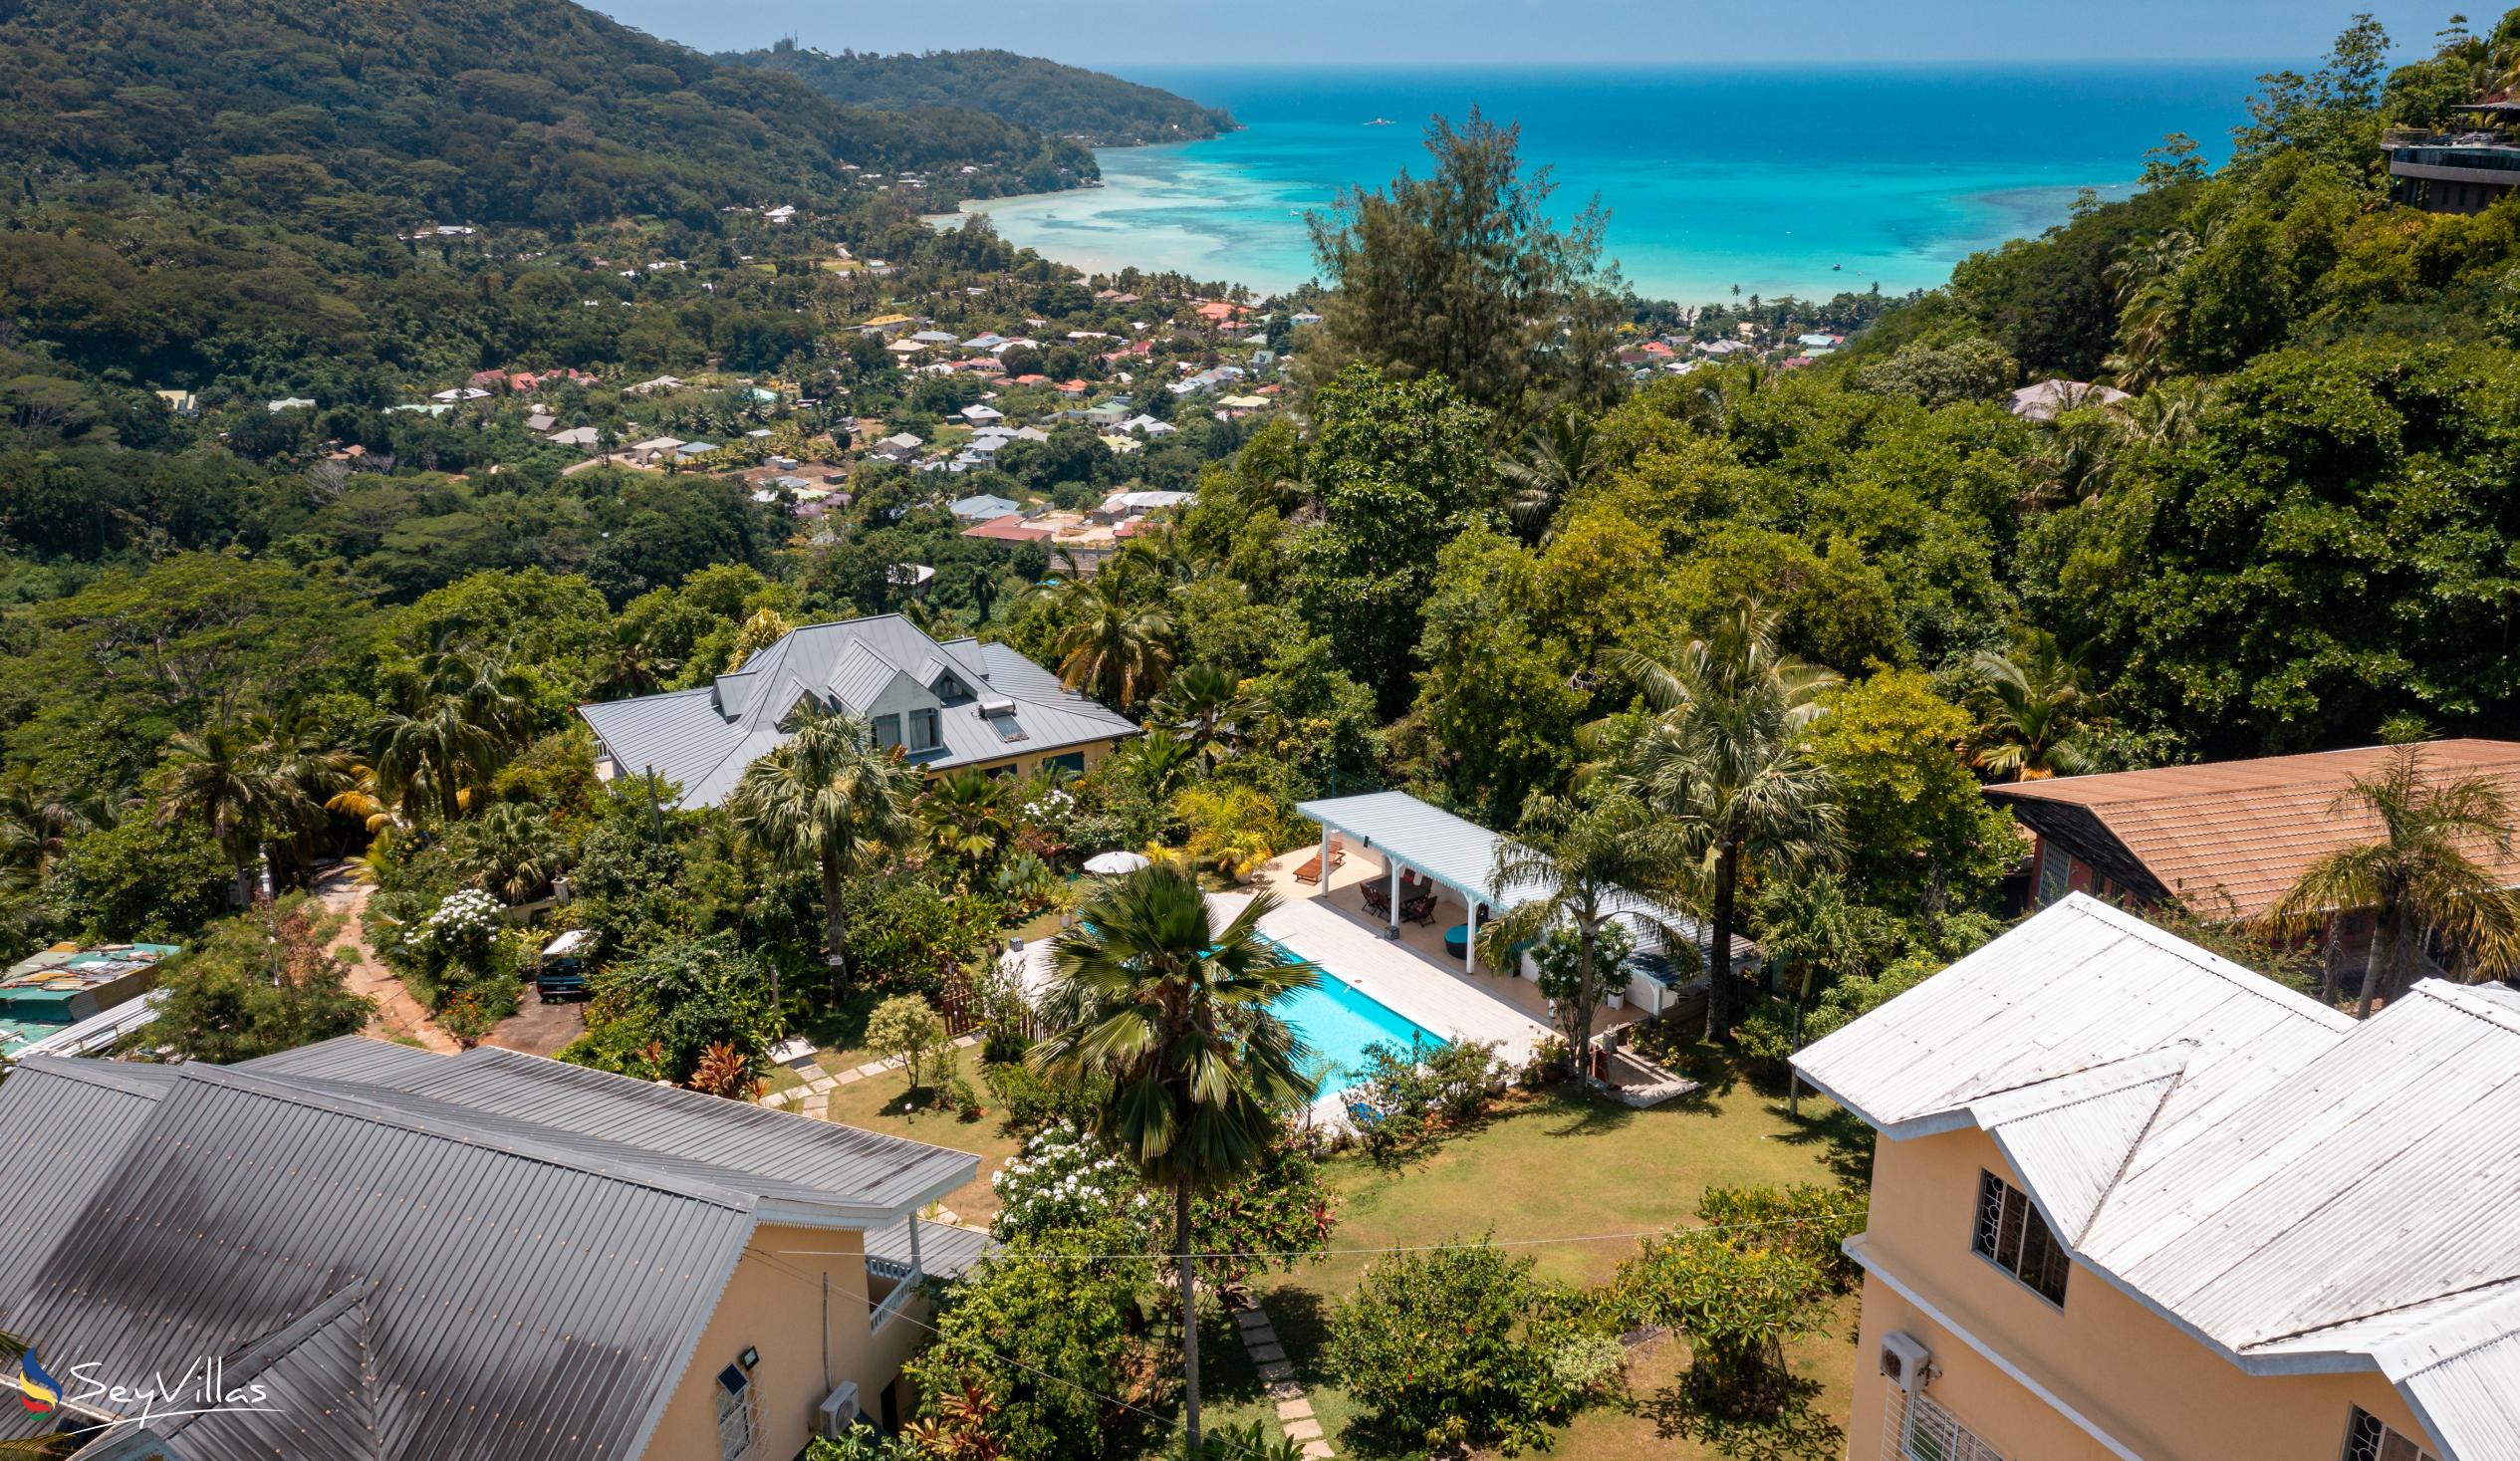 Foto 5: Residence Monte Cristo - Extérieur - Mahé (Seychelles)